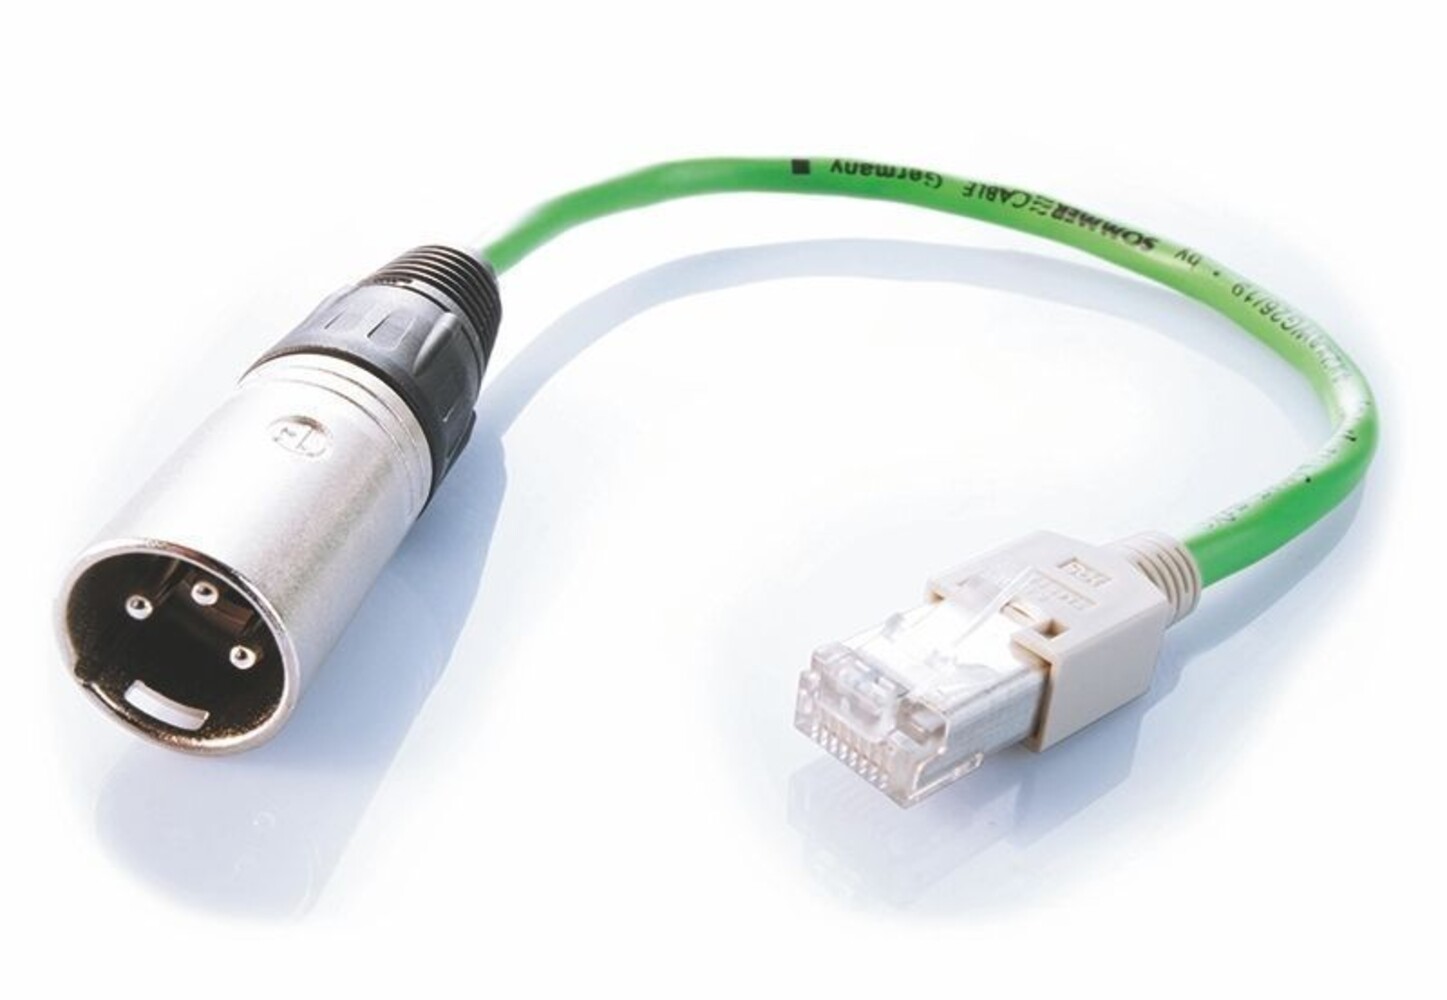 Hochwertiges GLT Verbindungs- und Adapterkabel mit hochfunktionalem DMX Adapter